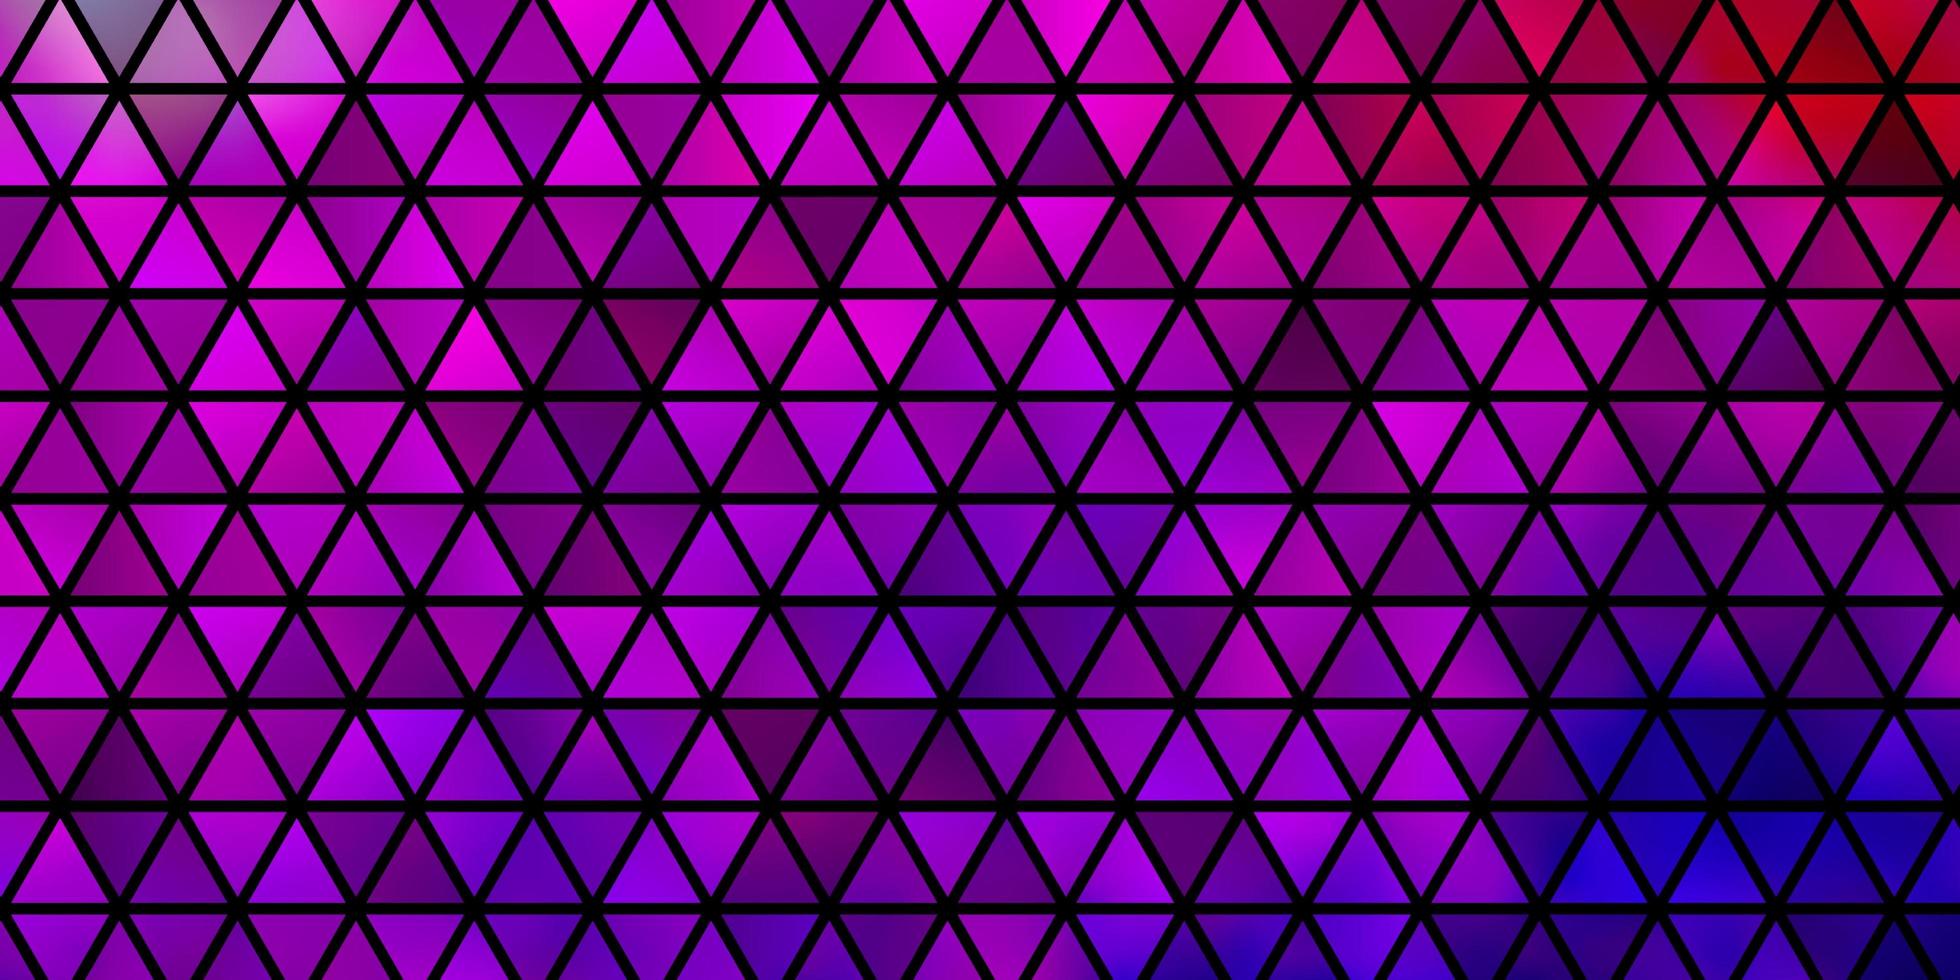 layout de vetor rosa roxo claro com linhas e triângulos